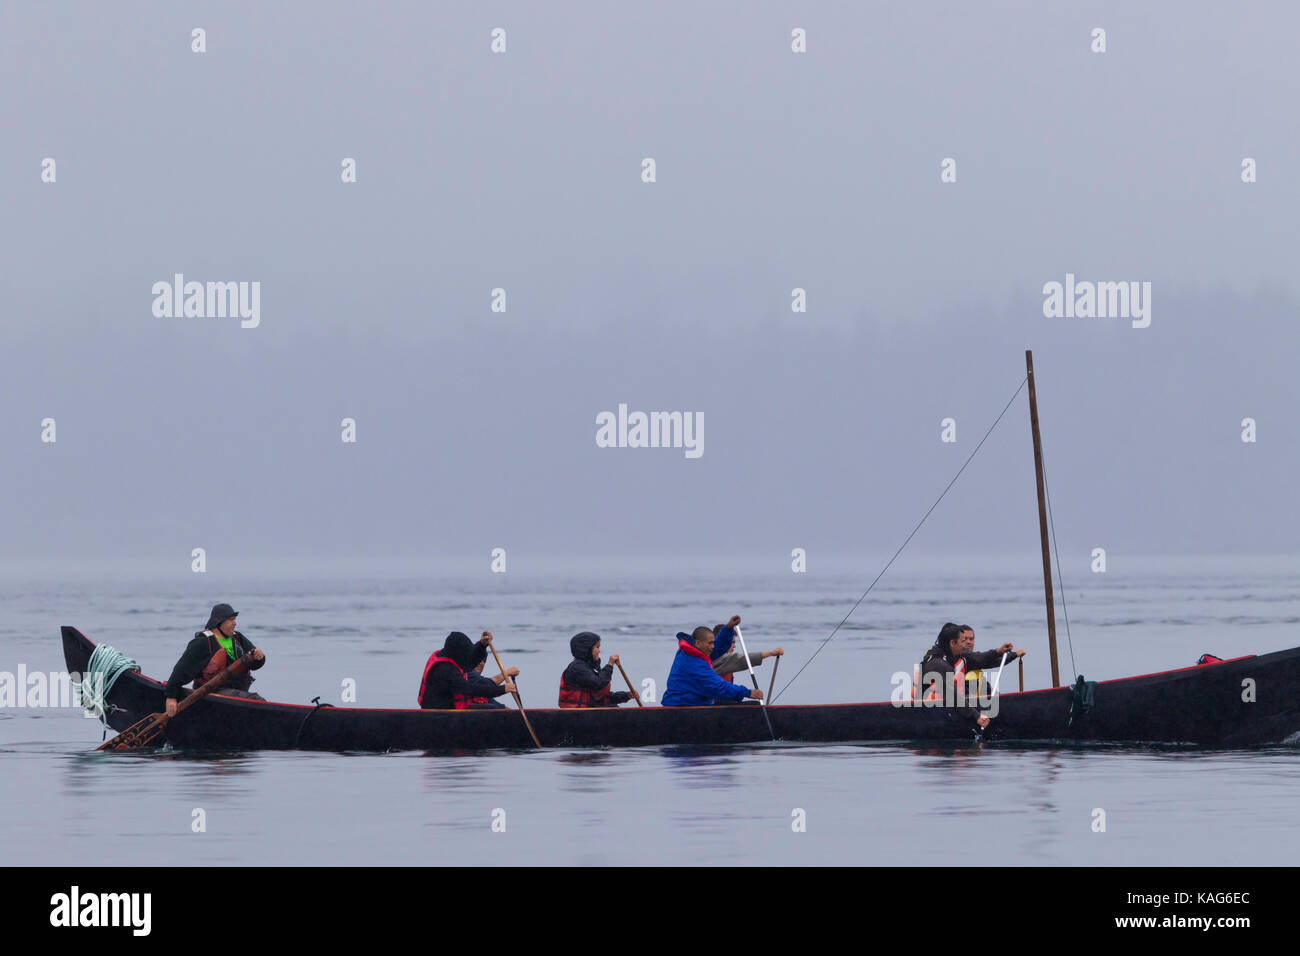 Primi Popoli indigeni in guerra canoa kayak verso swanson isola in segno di protesta contro la fishfarms, British Columbia, Canada. Foto Stock